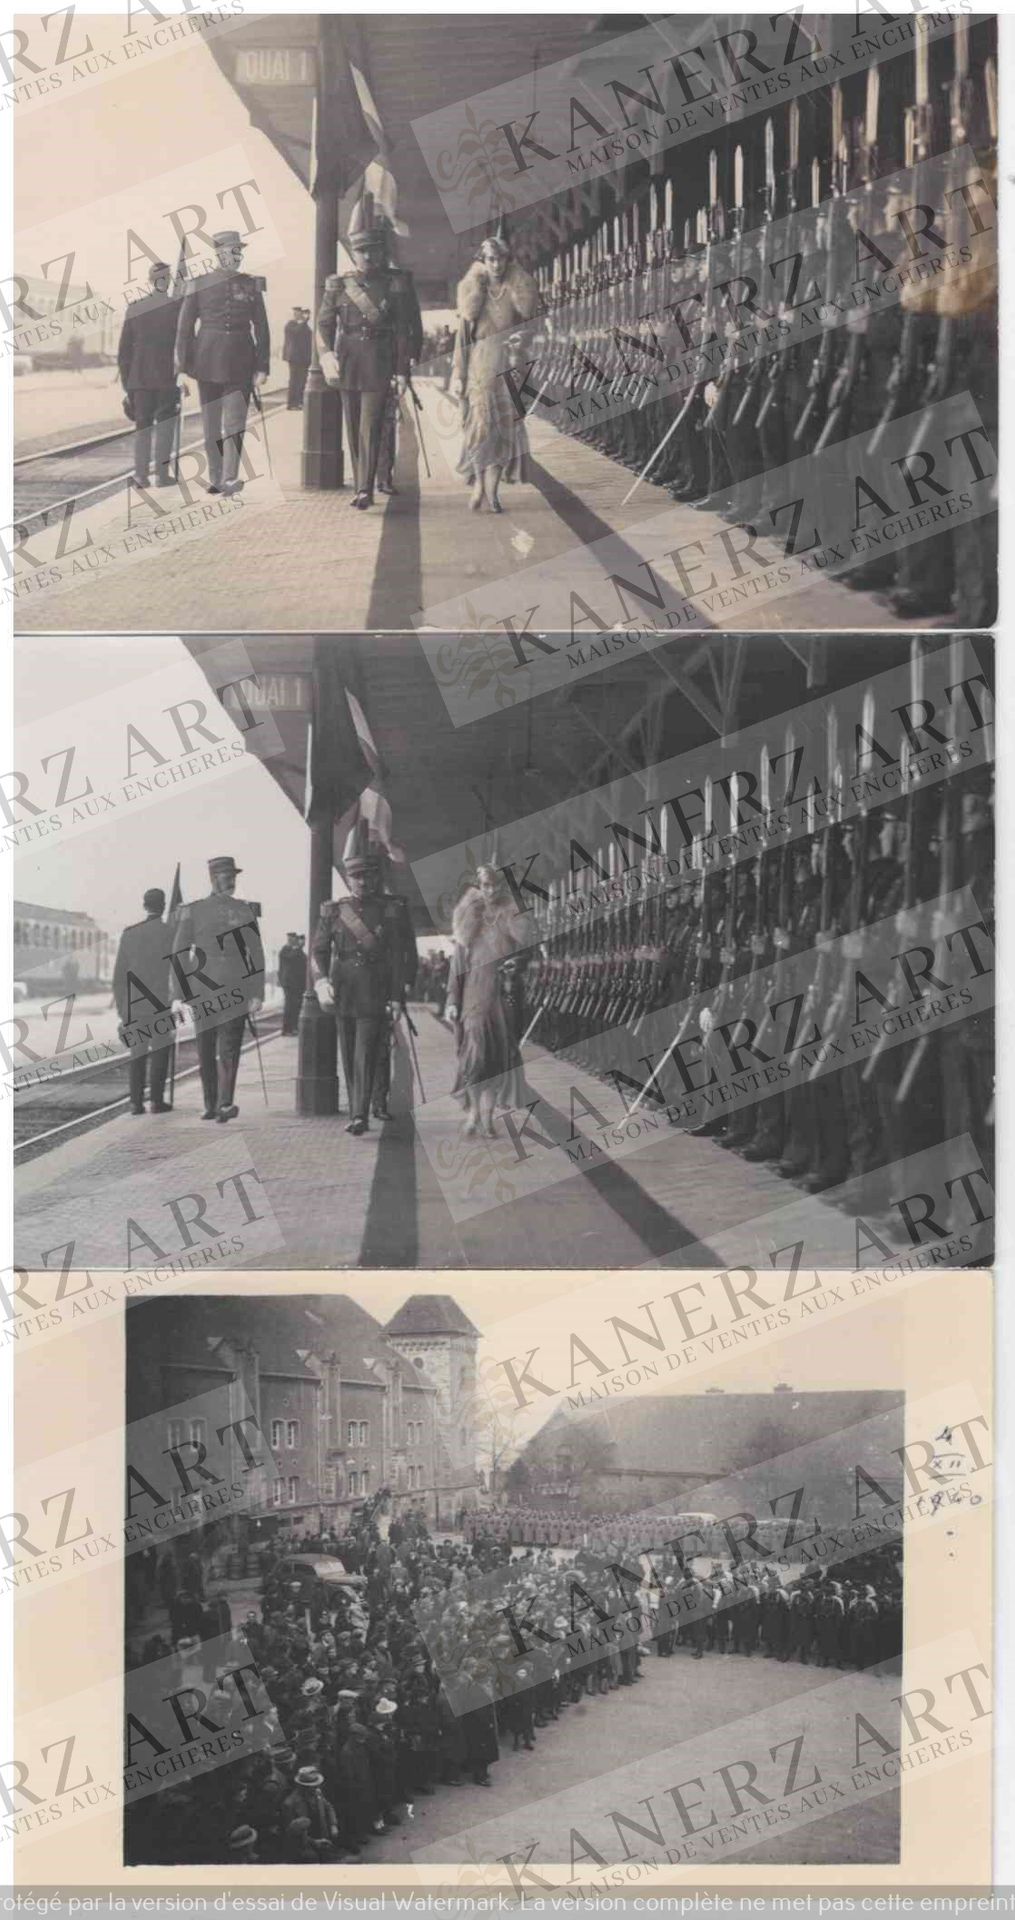 Null (WAR I und II) 2 Fotokarten von der Parade am Bahnhof mit Großherzogin Char&hellip;